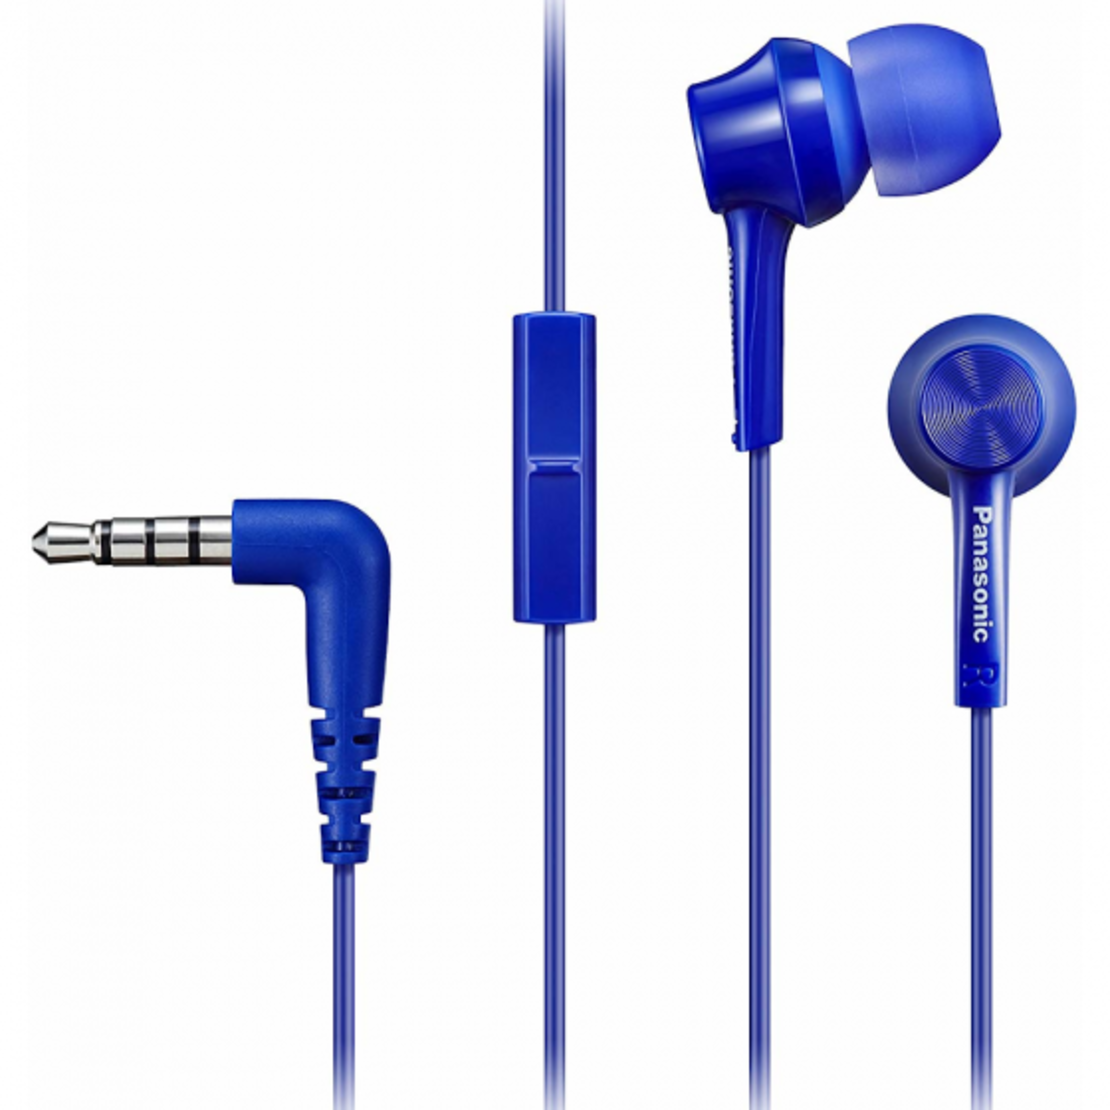 אוזניות Panasonic RP-TCM115 In-Ear - כחול